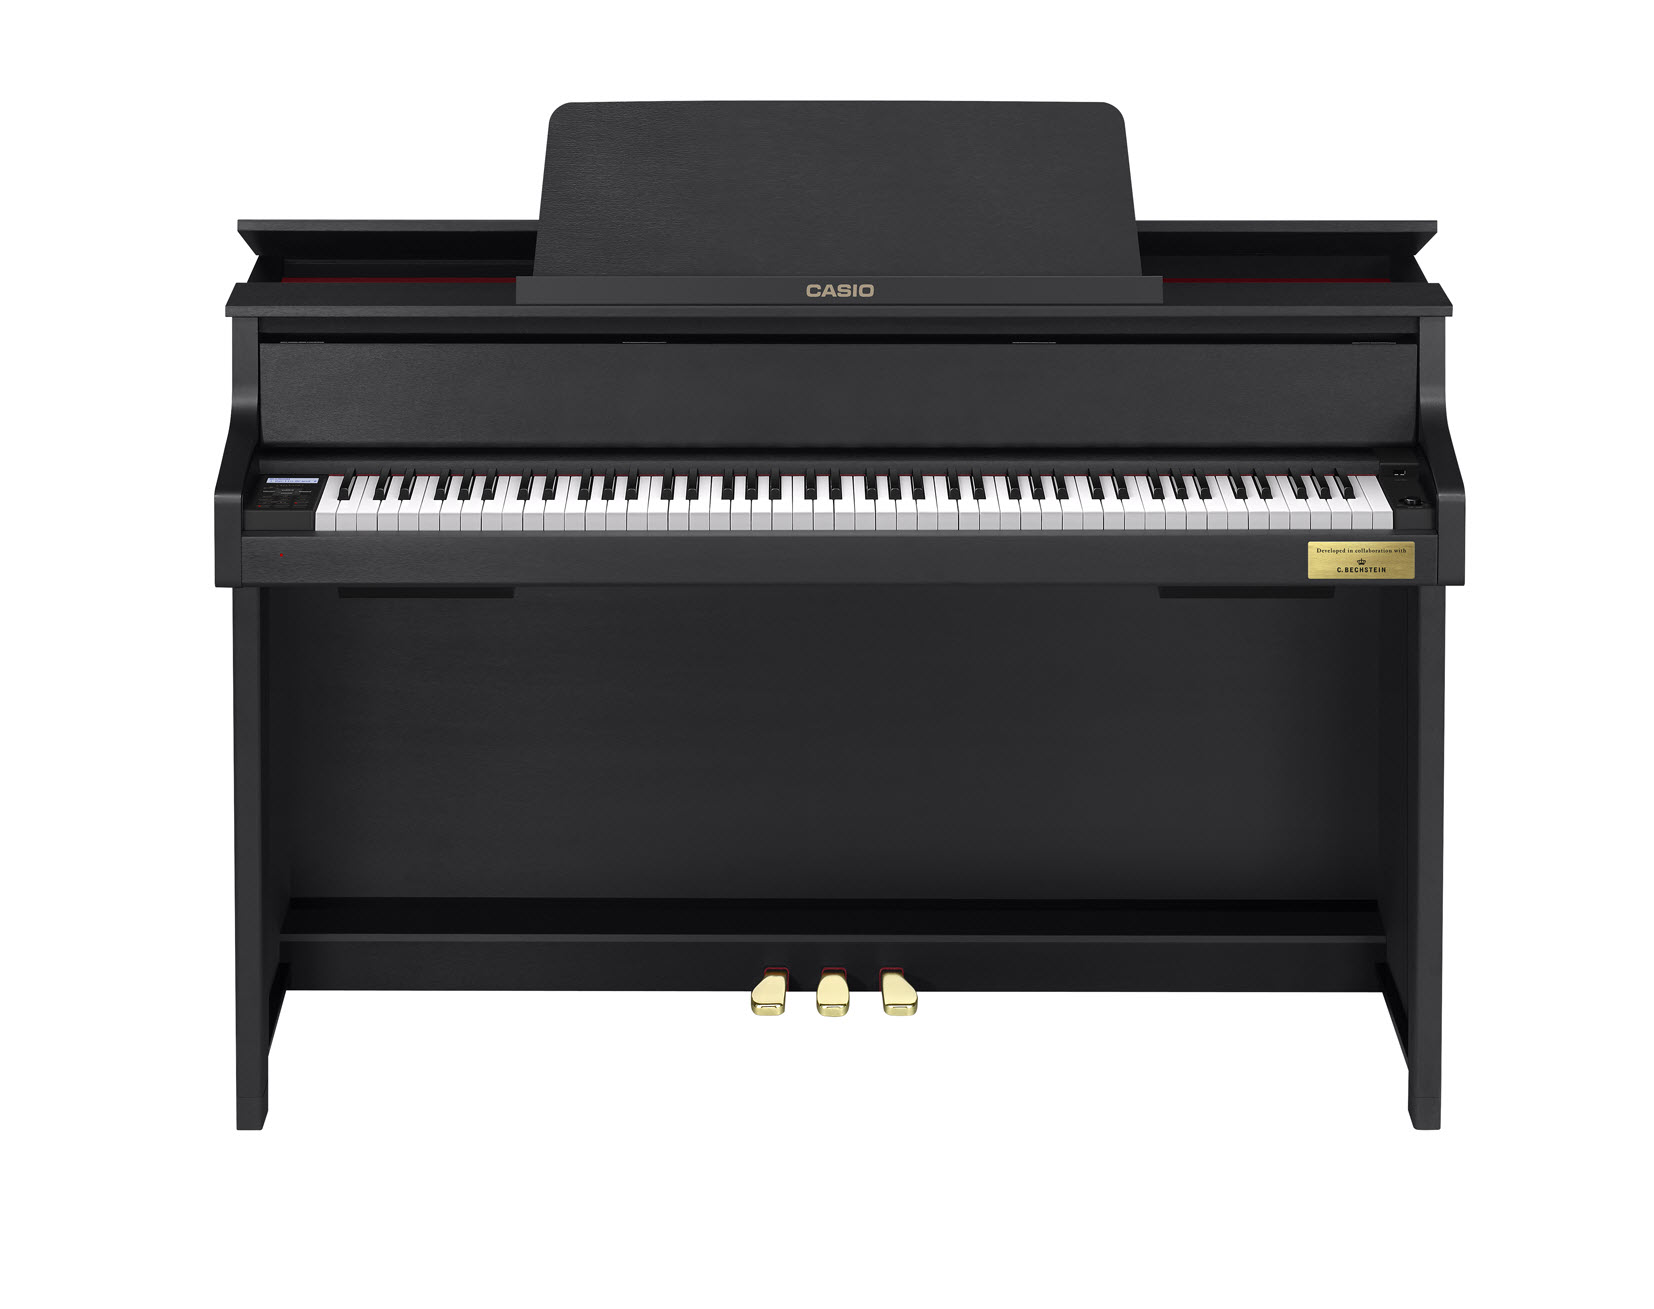 Đàn Piano Casio GP-300 BK là dòng Cleviano Grand Hybrid là sự kết hợp hoàn hảo của Piano hiện đại và truyền thống với bộ máy hoàn toàn điểu kiển bằng cơ học